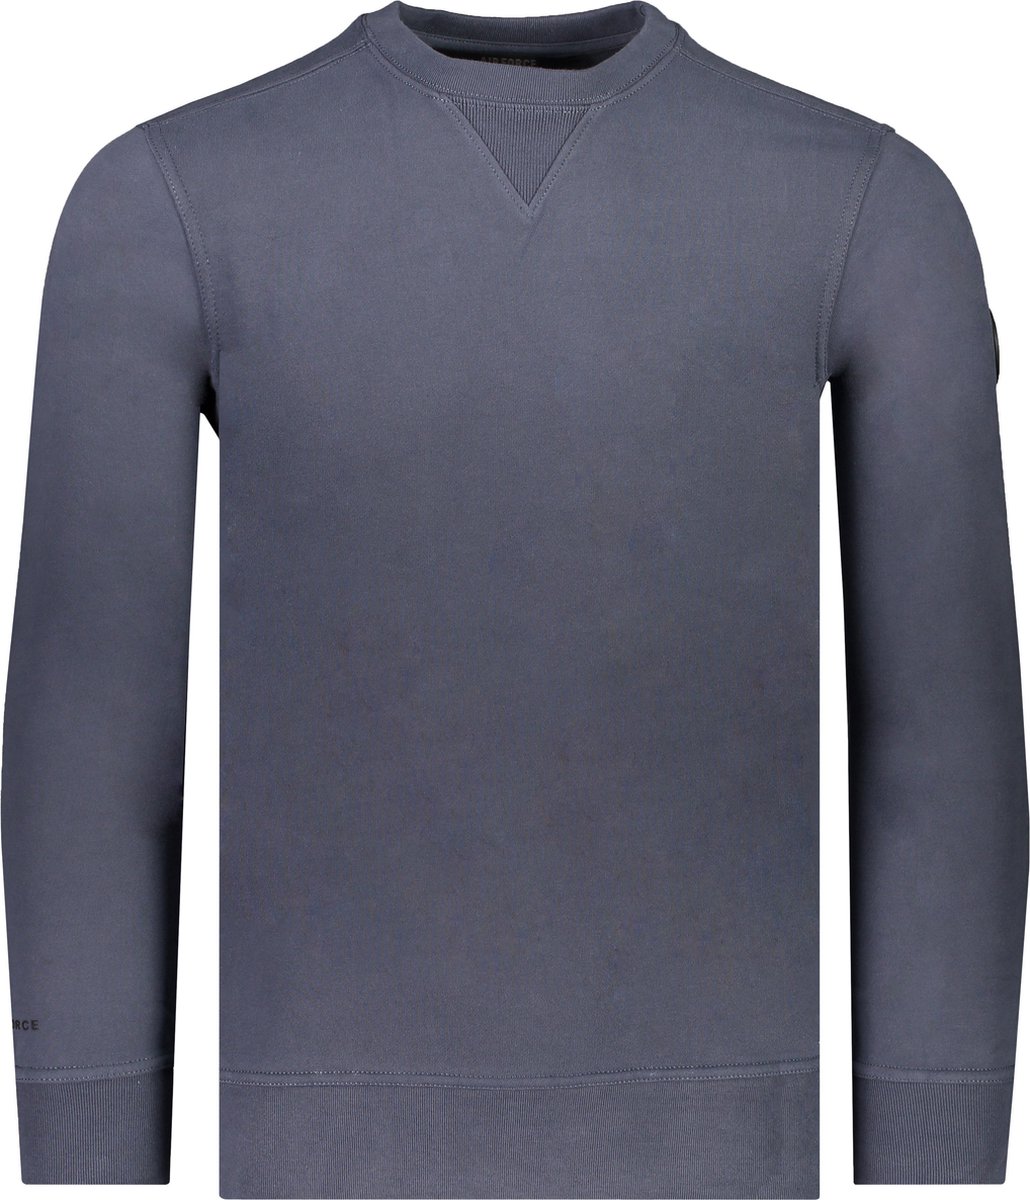 Airforce Sweater Blauw Normaal - Maat XXL - Mannen - Lente/Zomer Collectie - Katoen